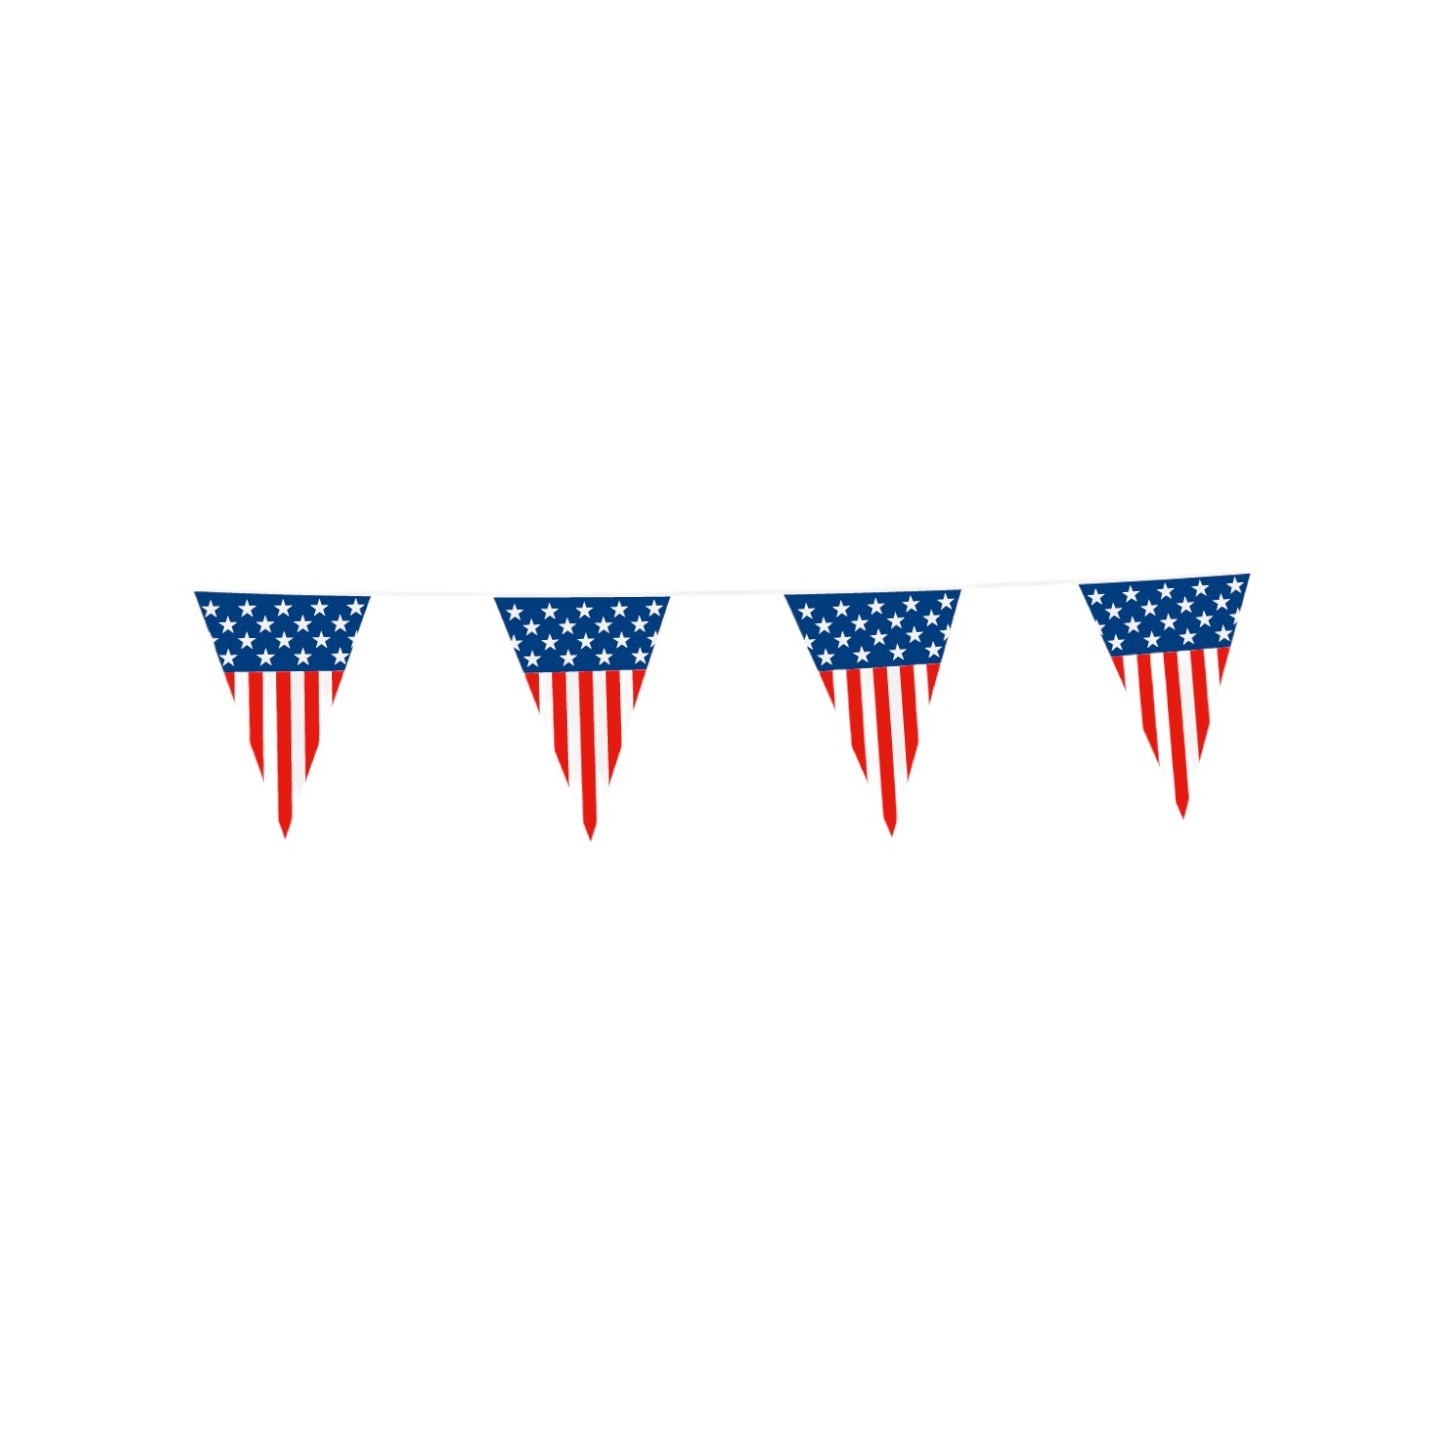 vlaggenlijn usa amerika vlaggetjes feestartikelen